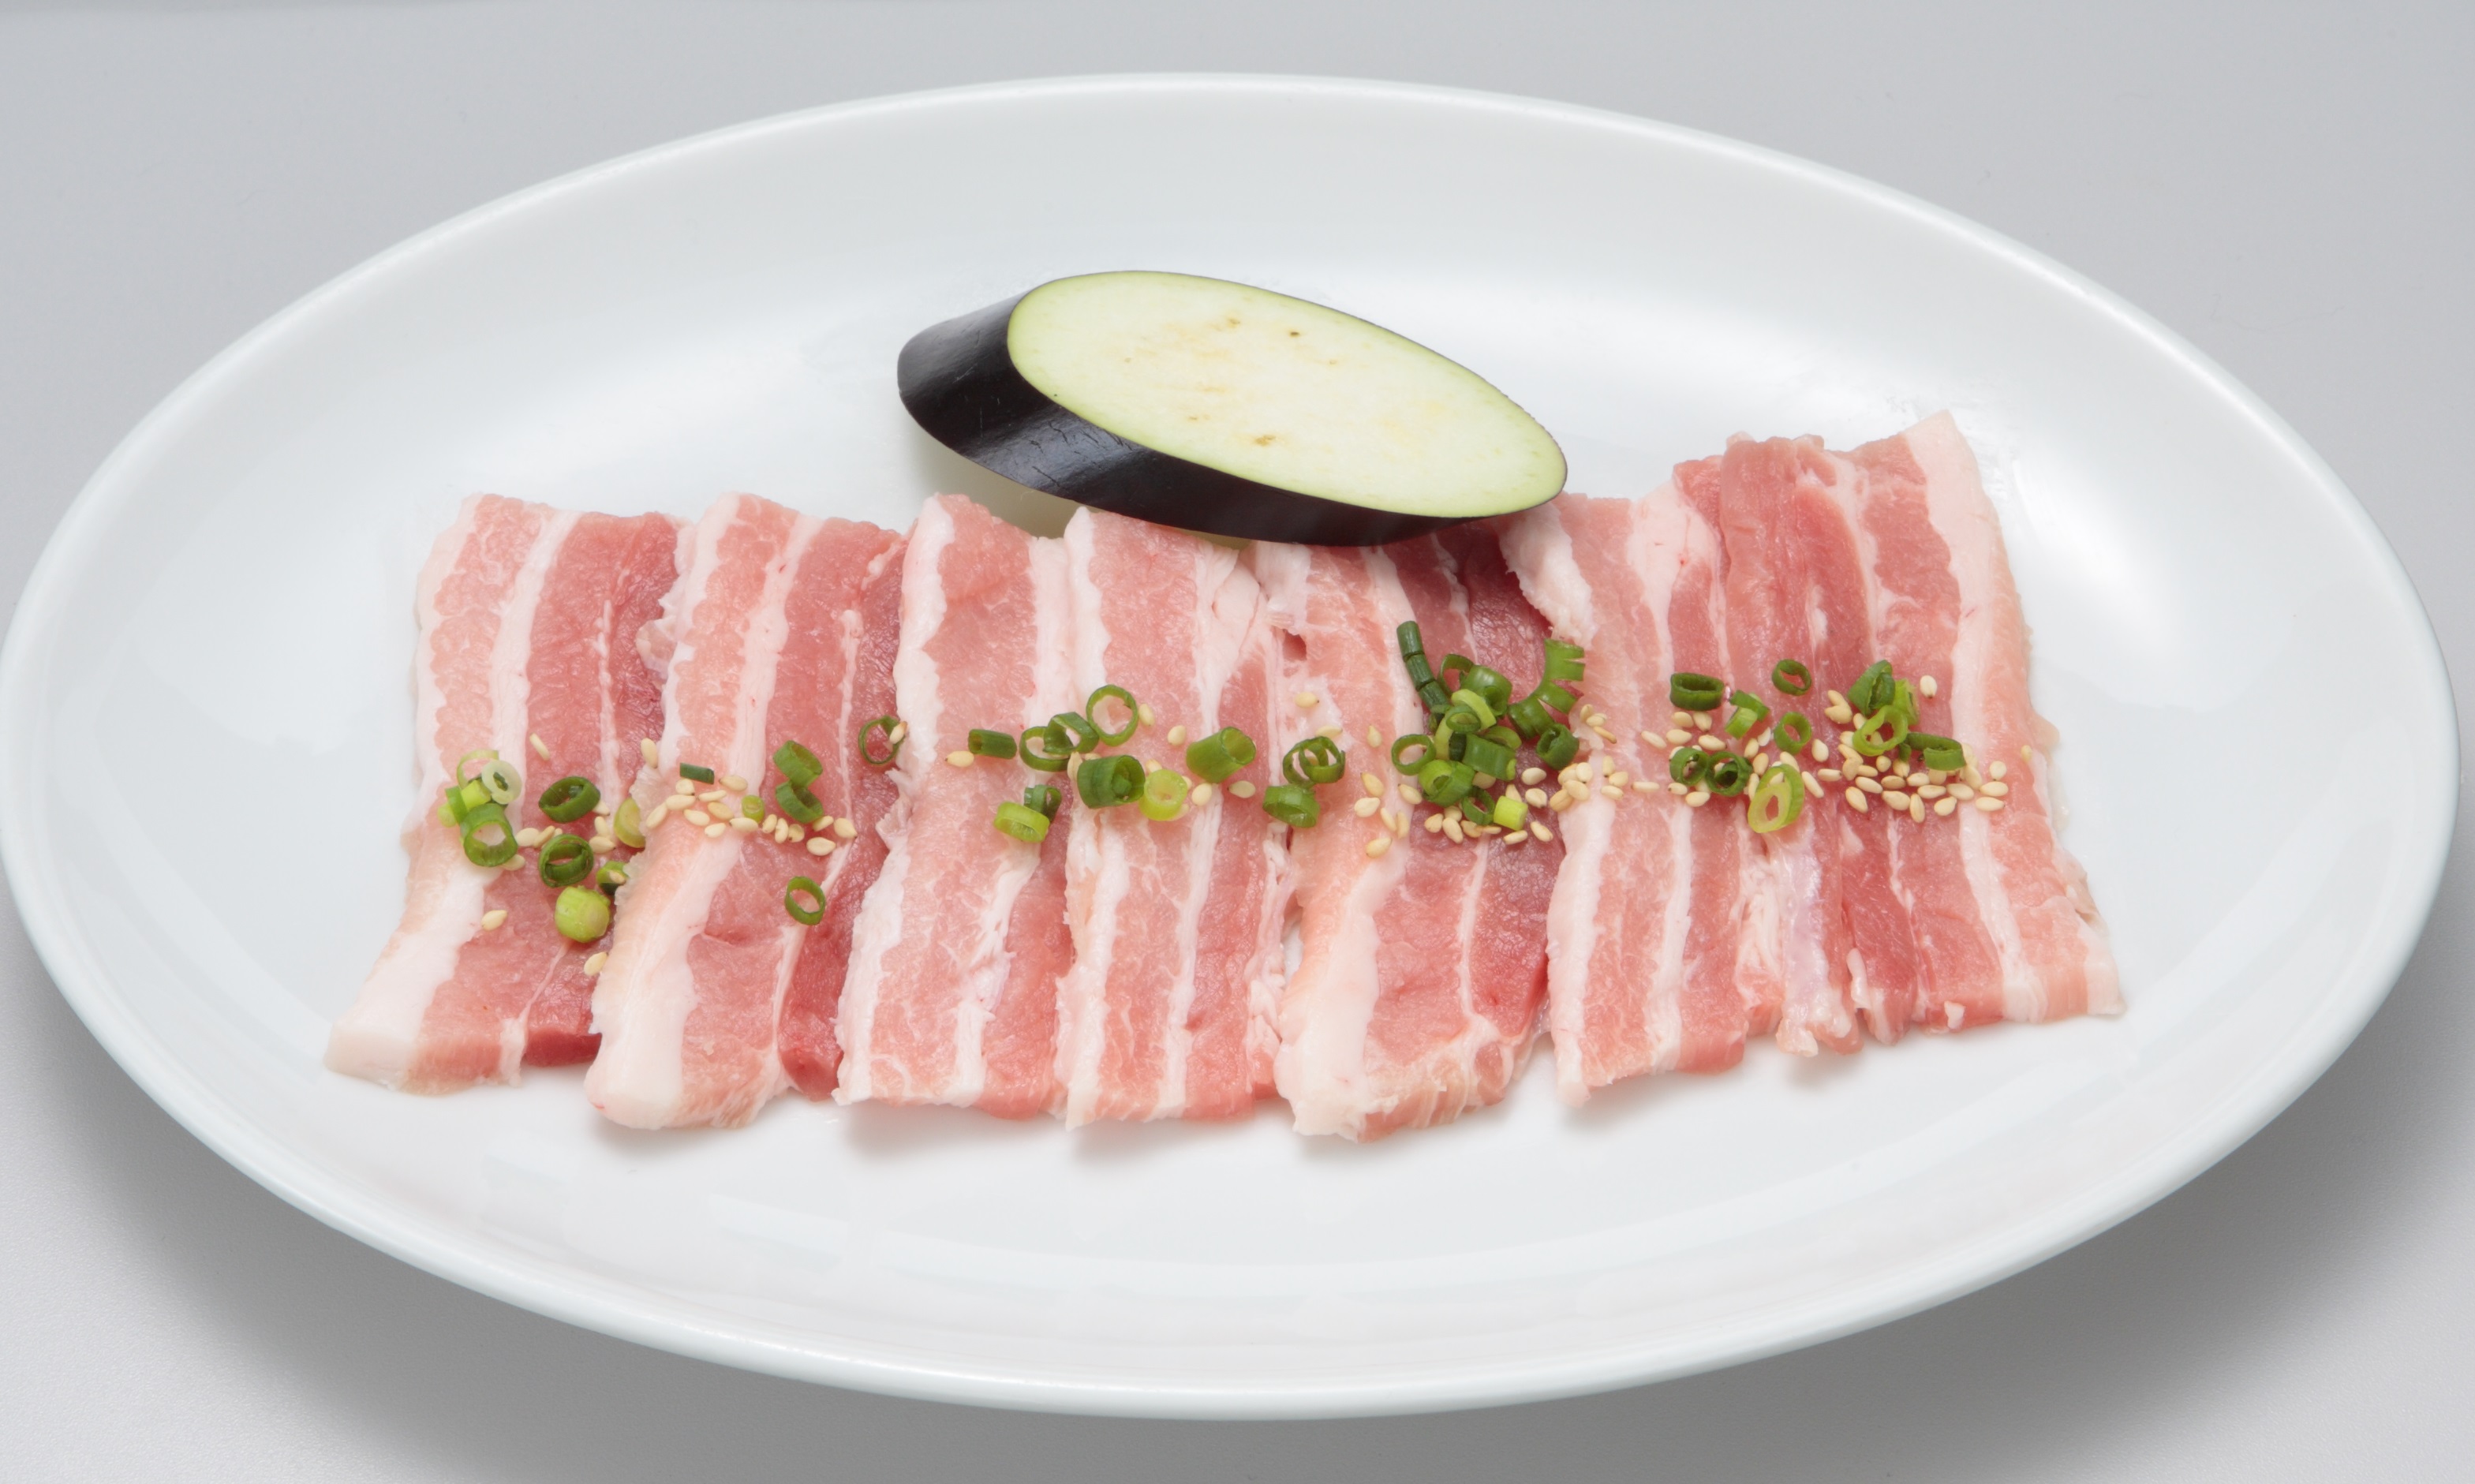 「金豚王カルビ」はアバラ骨の周囲肉、赤身と脂身が交互3層になっております。
コクと旨味が最高です！
『金豚王』はとにかく肉質がやわらかく一口食べれば違いがわかる豚肉です。